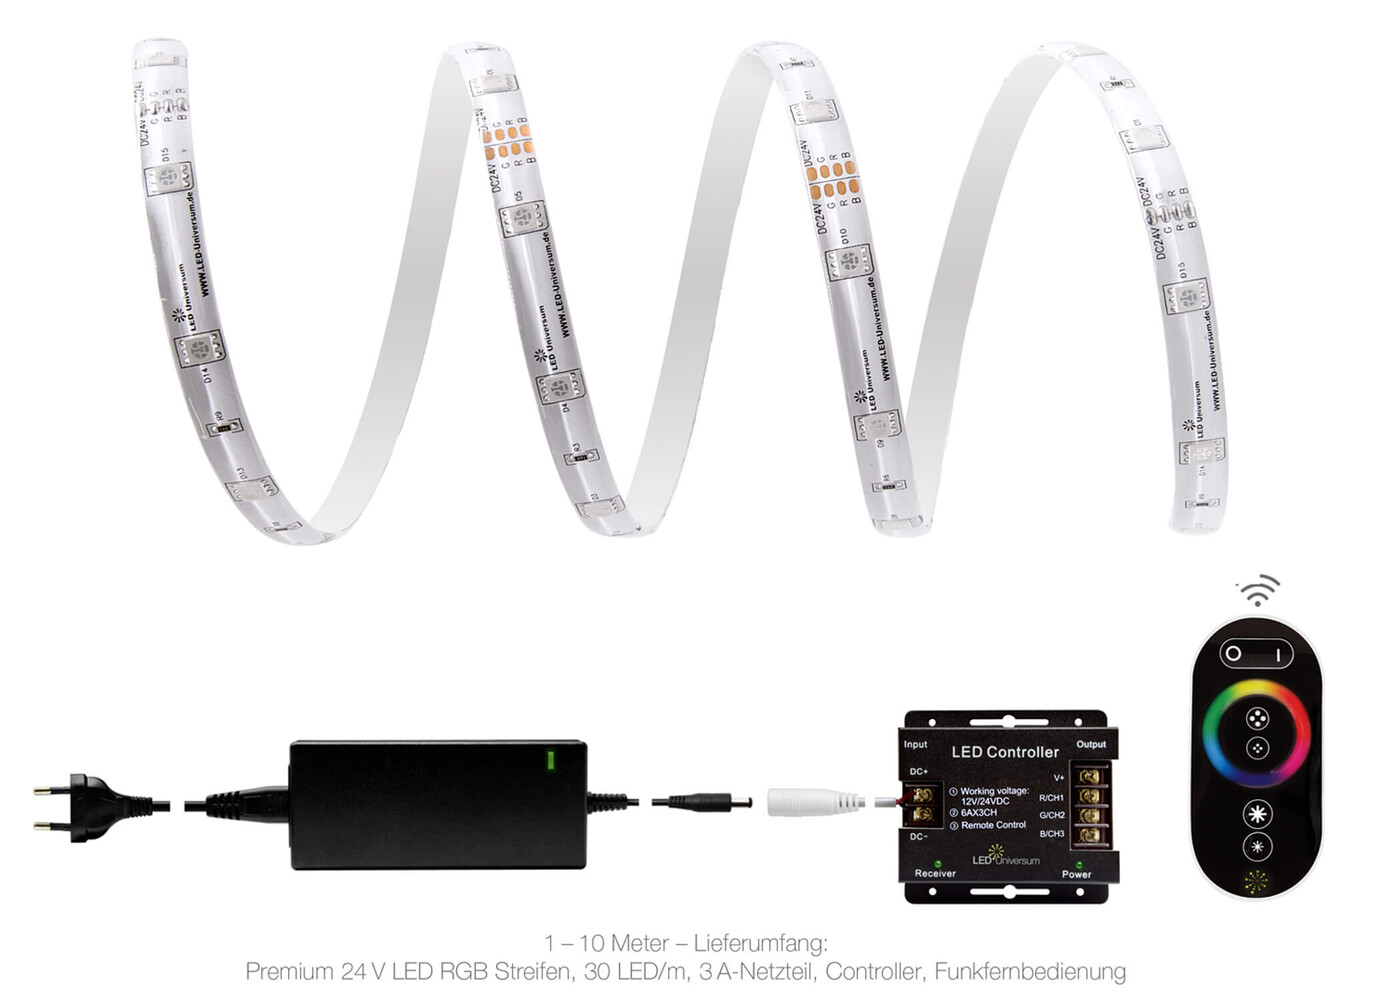 Hochwertiger, farbenfroher LED Streifen von LED Universum mit praktischer Fernbedienung und T Verbinder